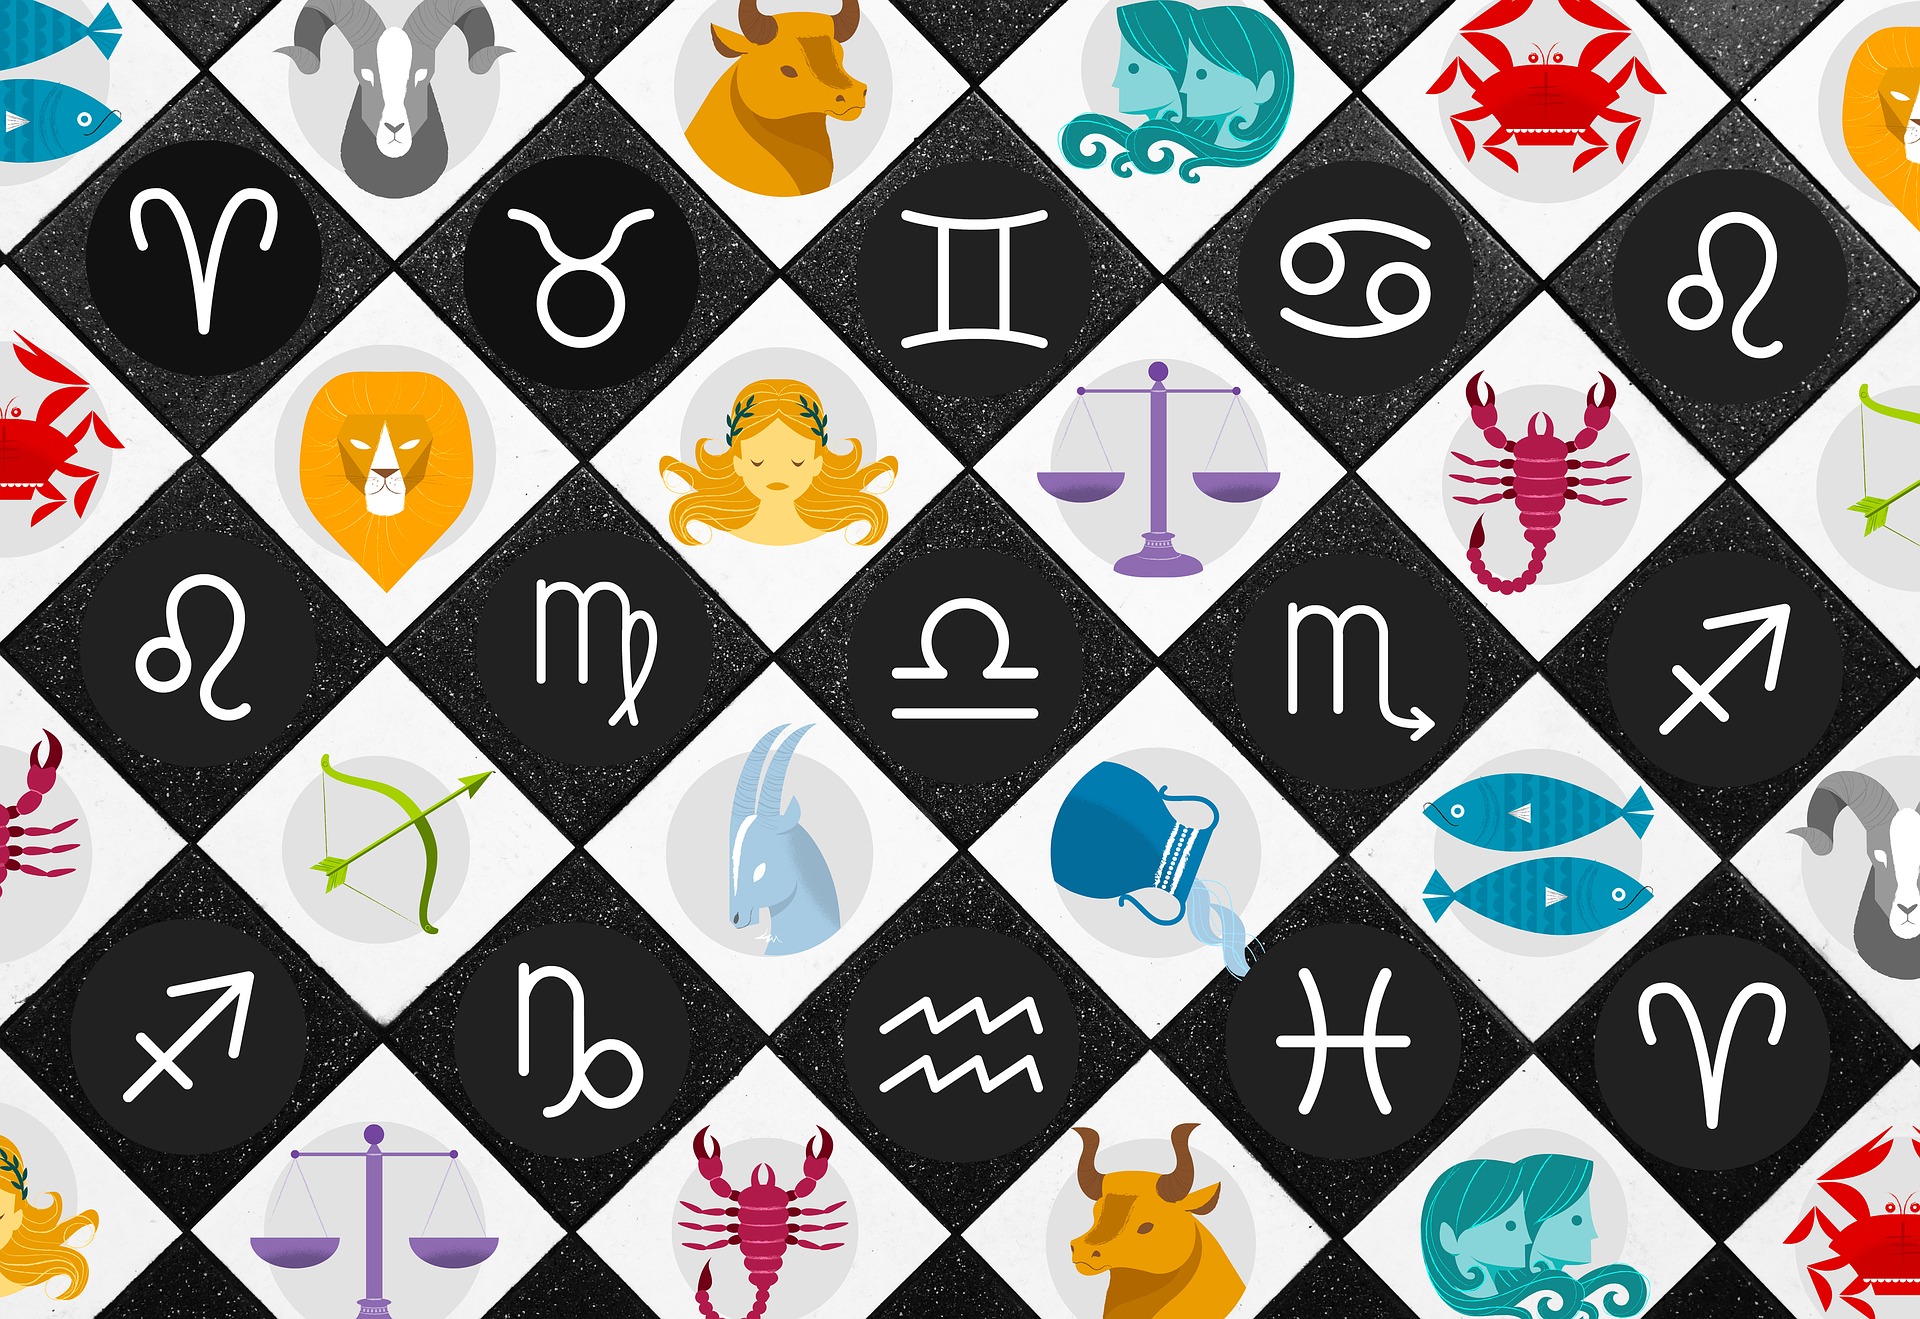 Los horóscopos: Fechas, compatibilidad, elemento y gema de cada signo